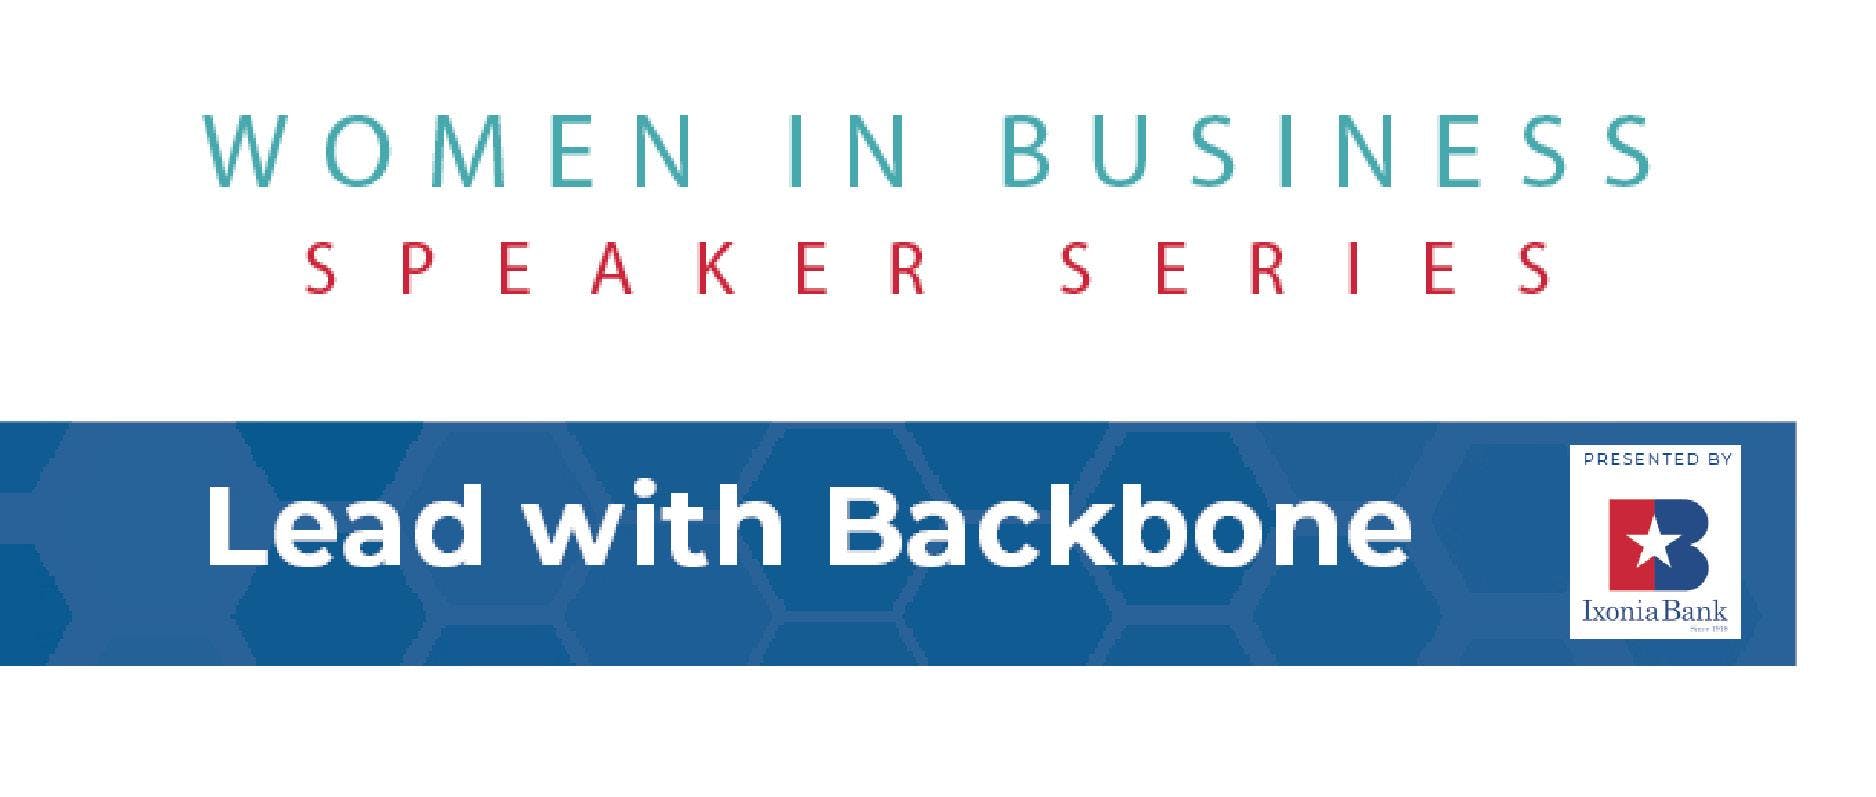 Women in Business: Lead with Backbone